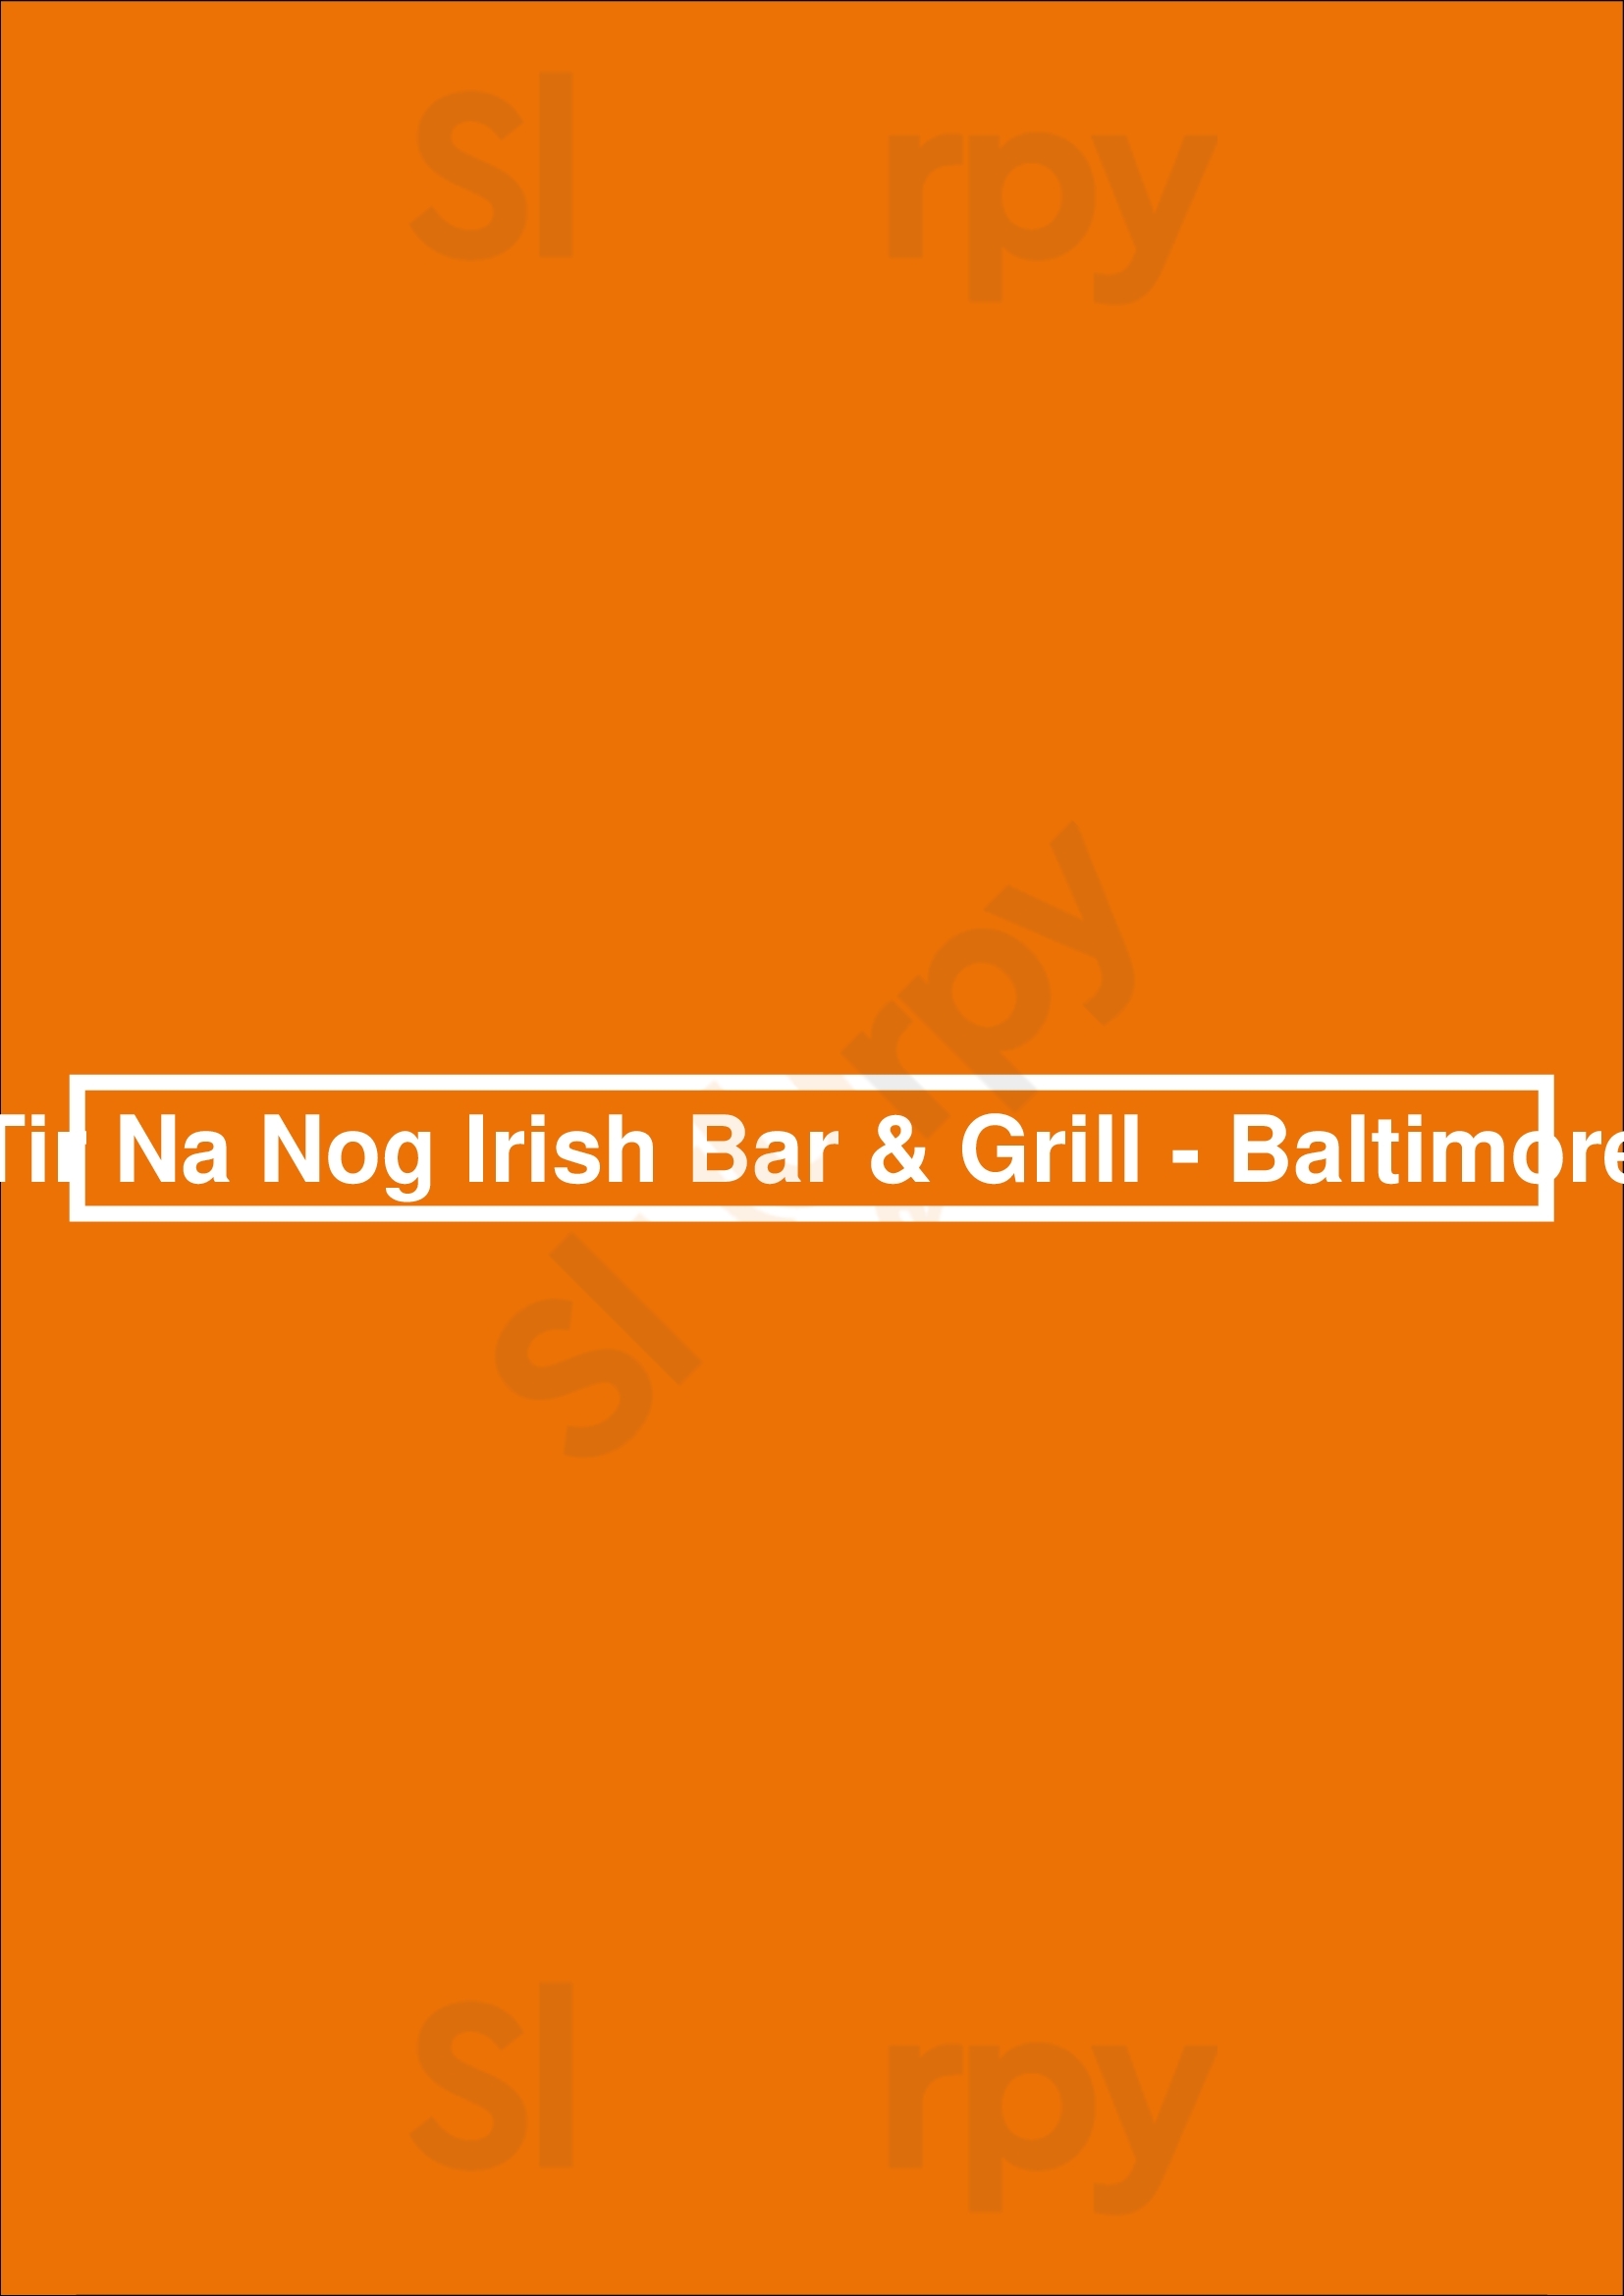 Tir Na Nog Irish Bar & Grill - Baltimore Baltimore Menu - 1